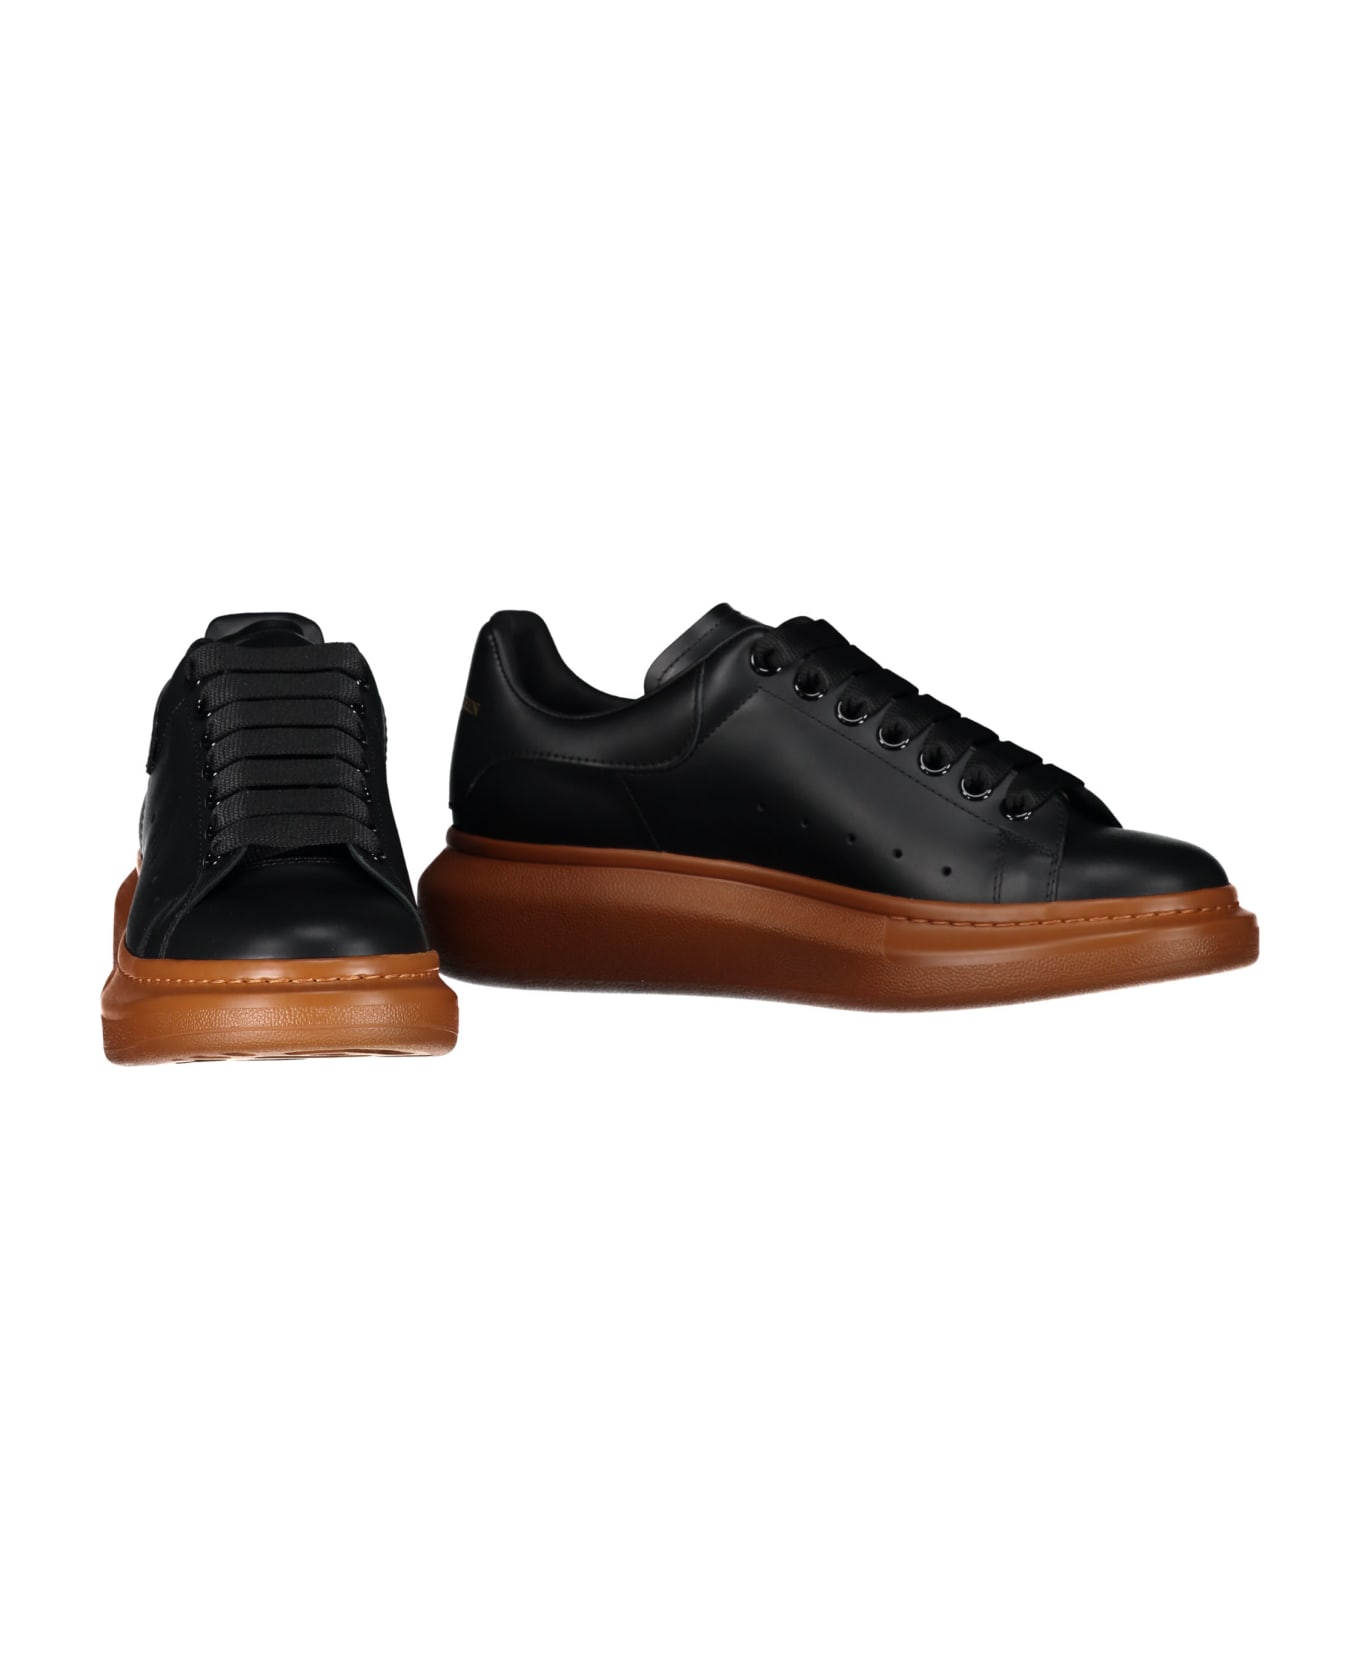 Alexander McQueen Larry Leather Sneakers - black